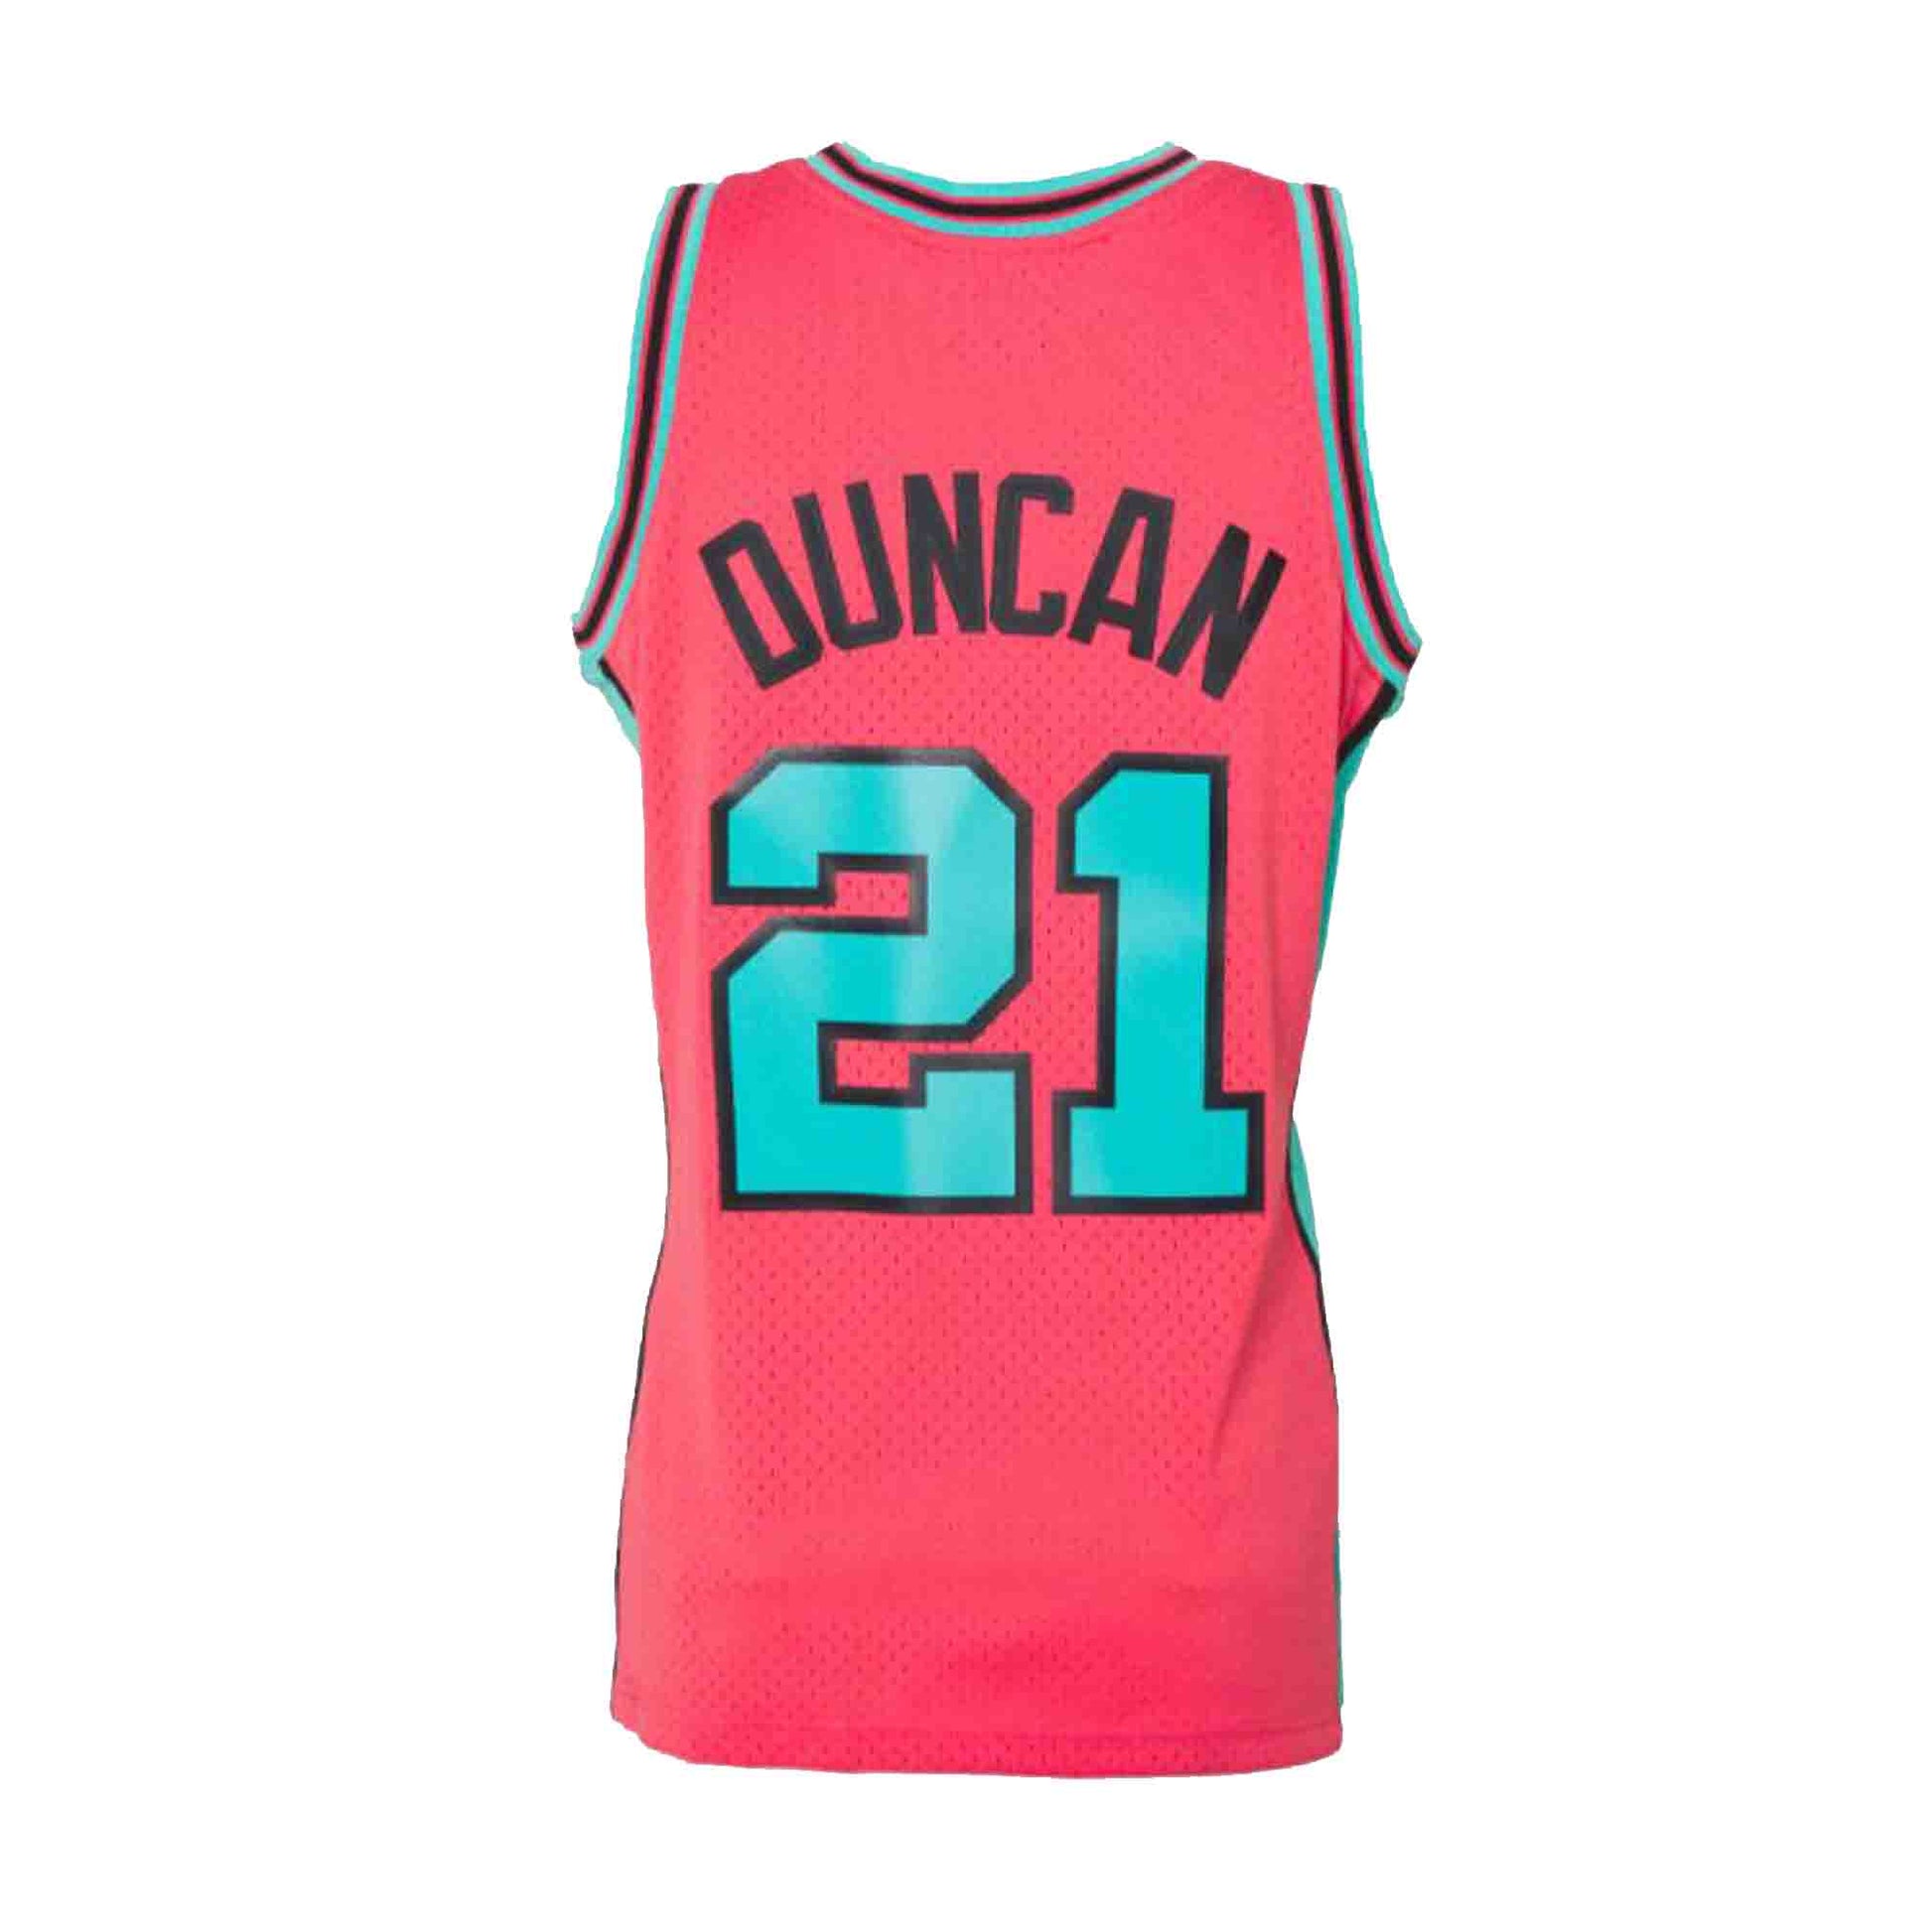 NBA Throwback Jerseys - San Antonio Spurs Tim Duncan & more! – Seattle Shirt